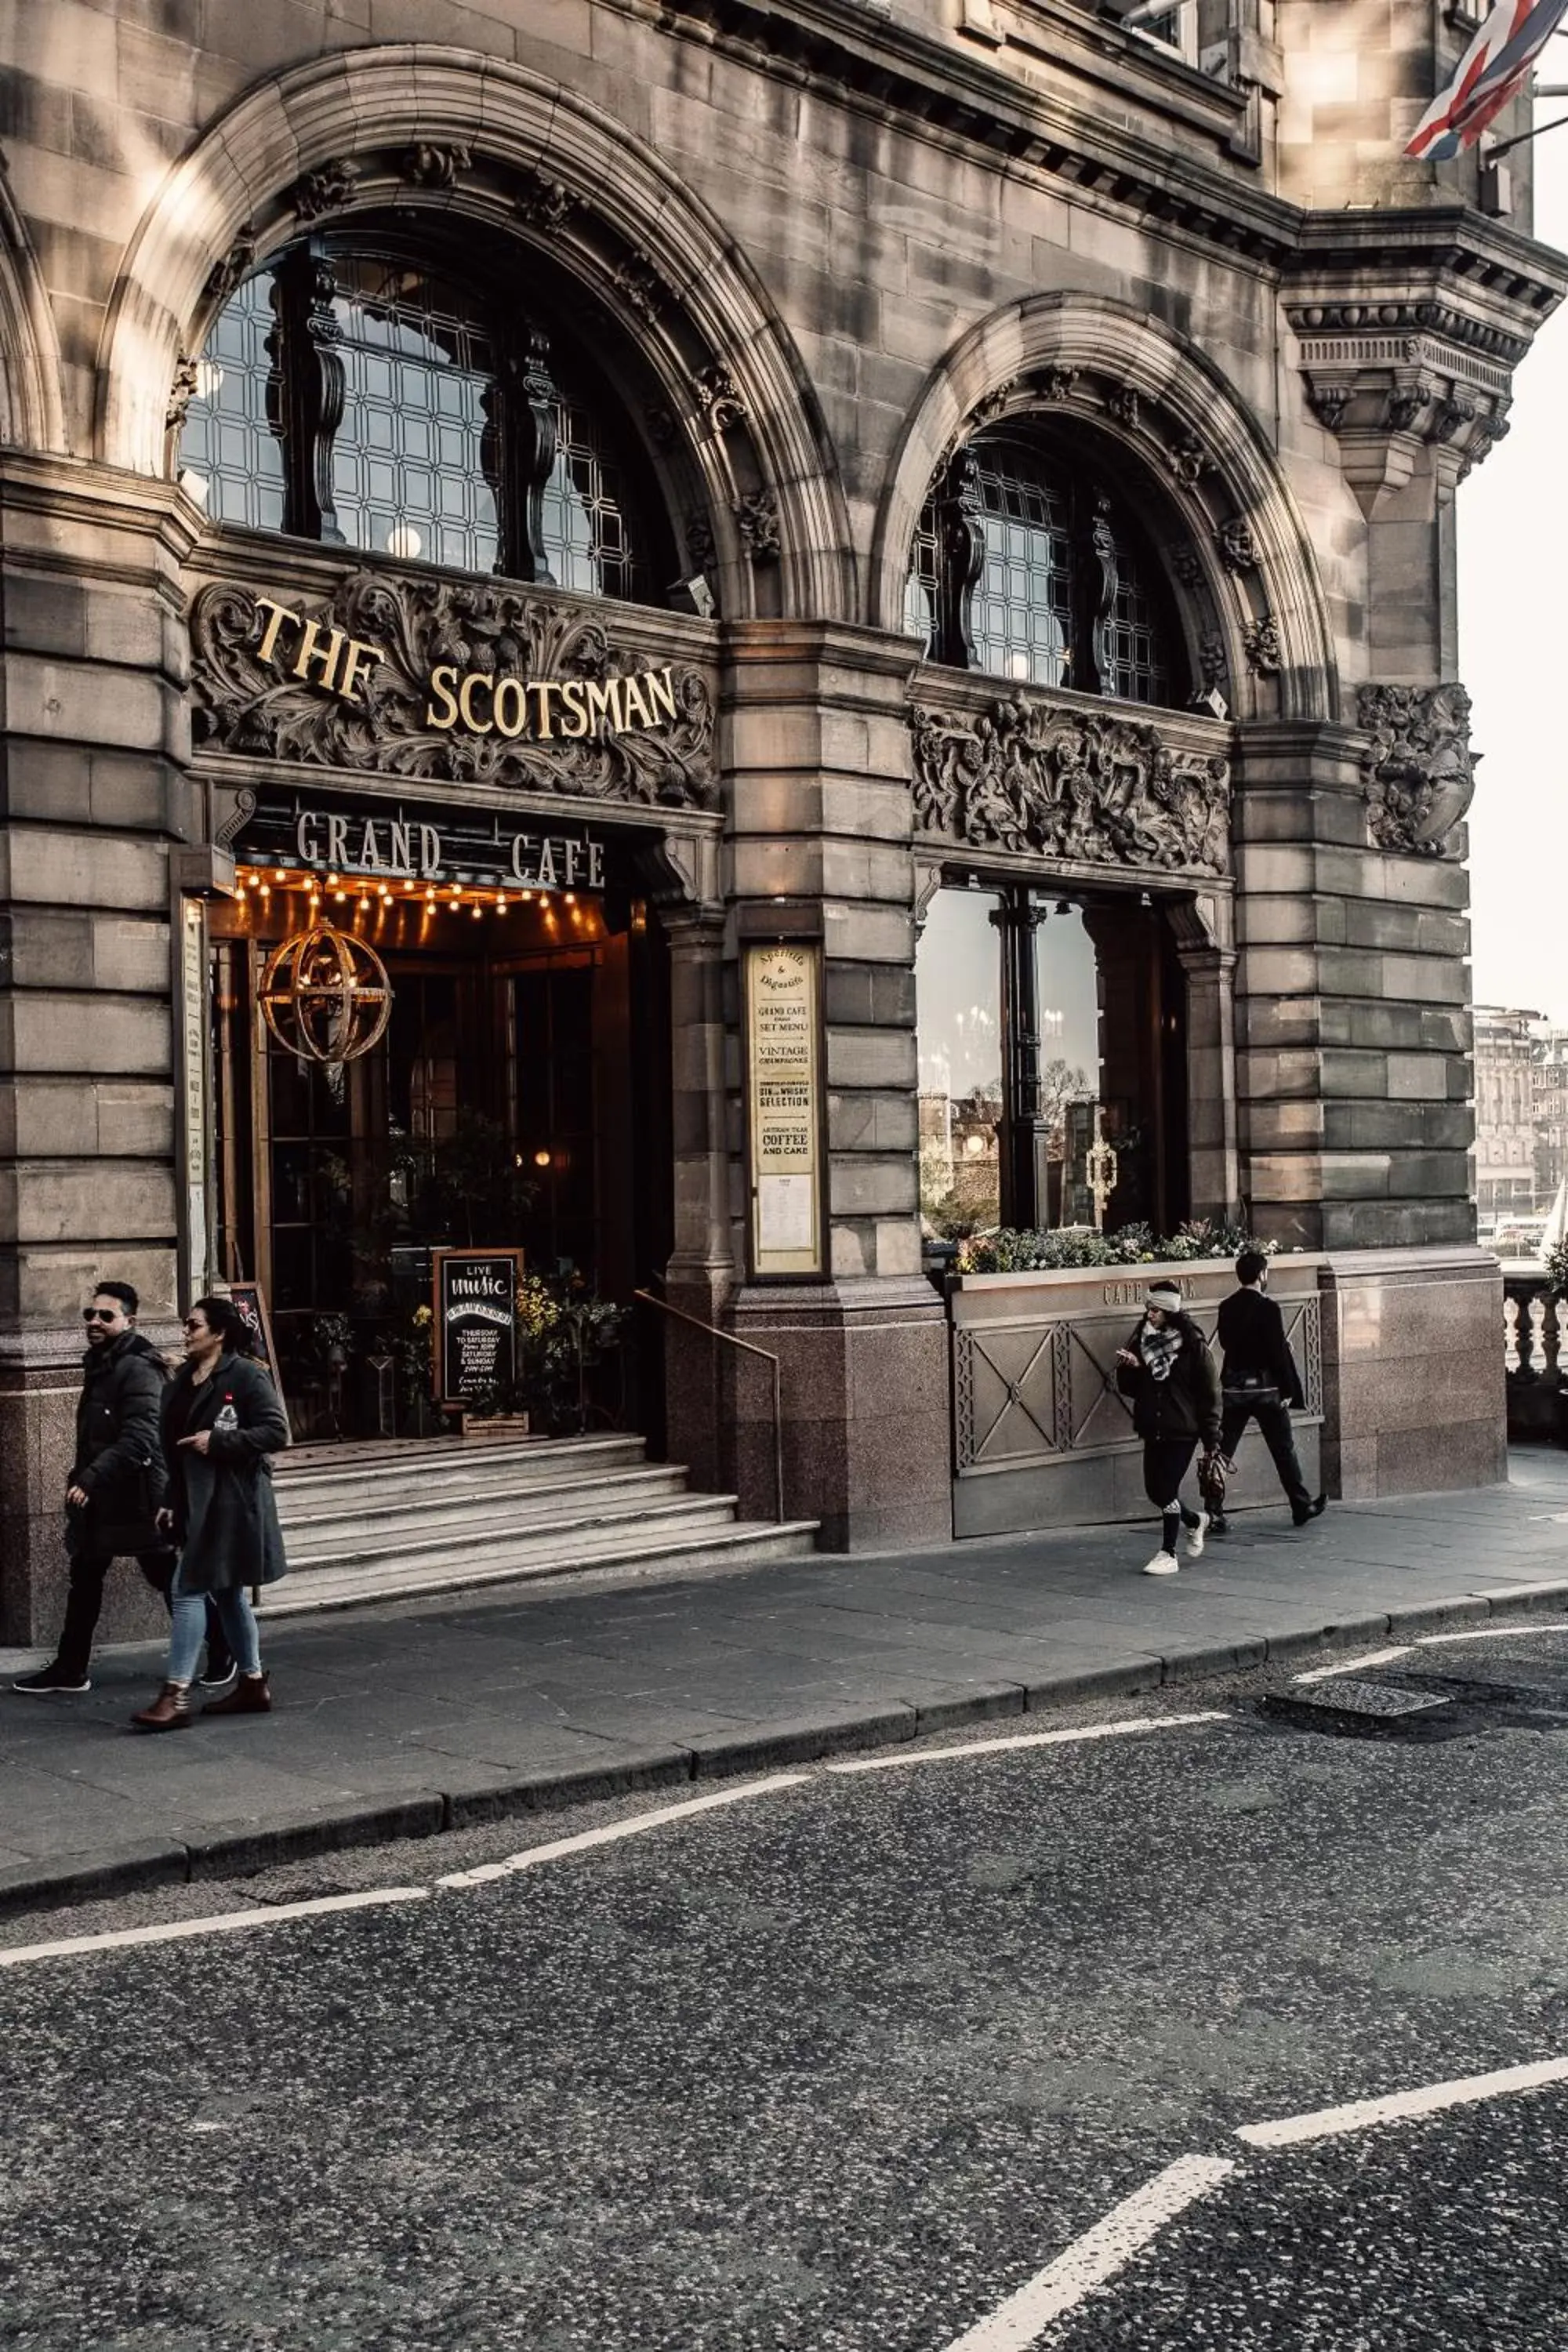 Facade/entrance in The Scotsman Hotel